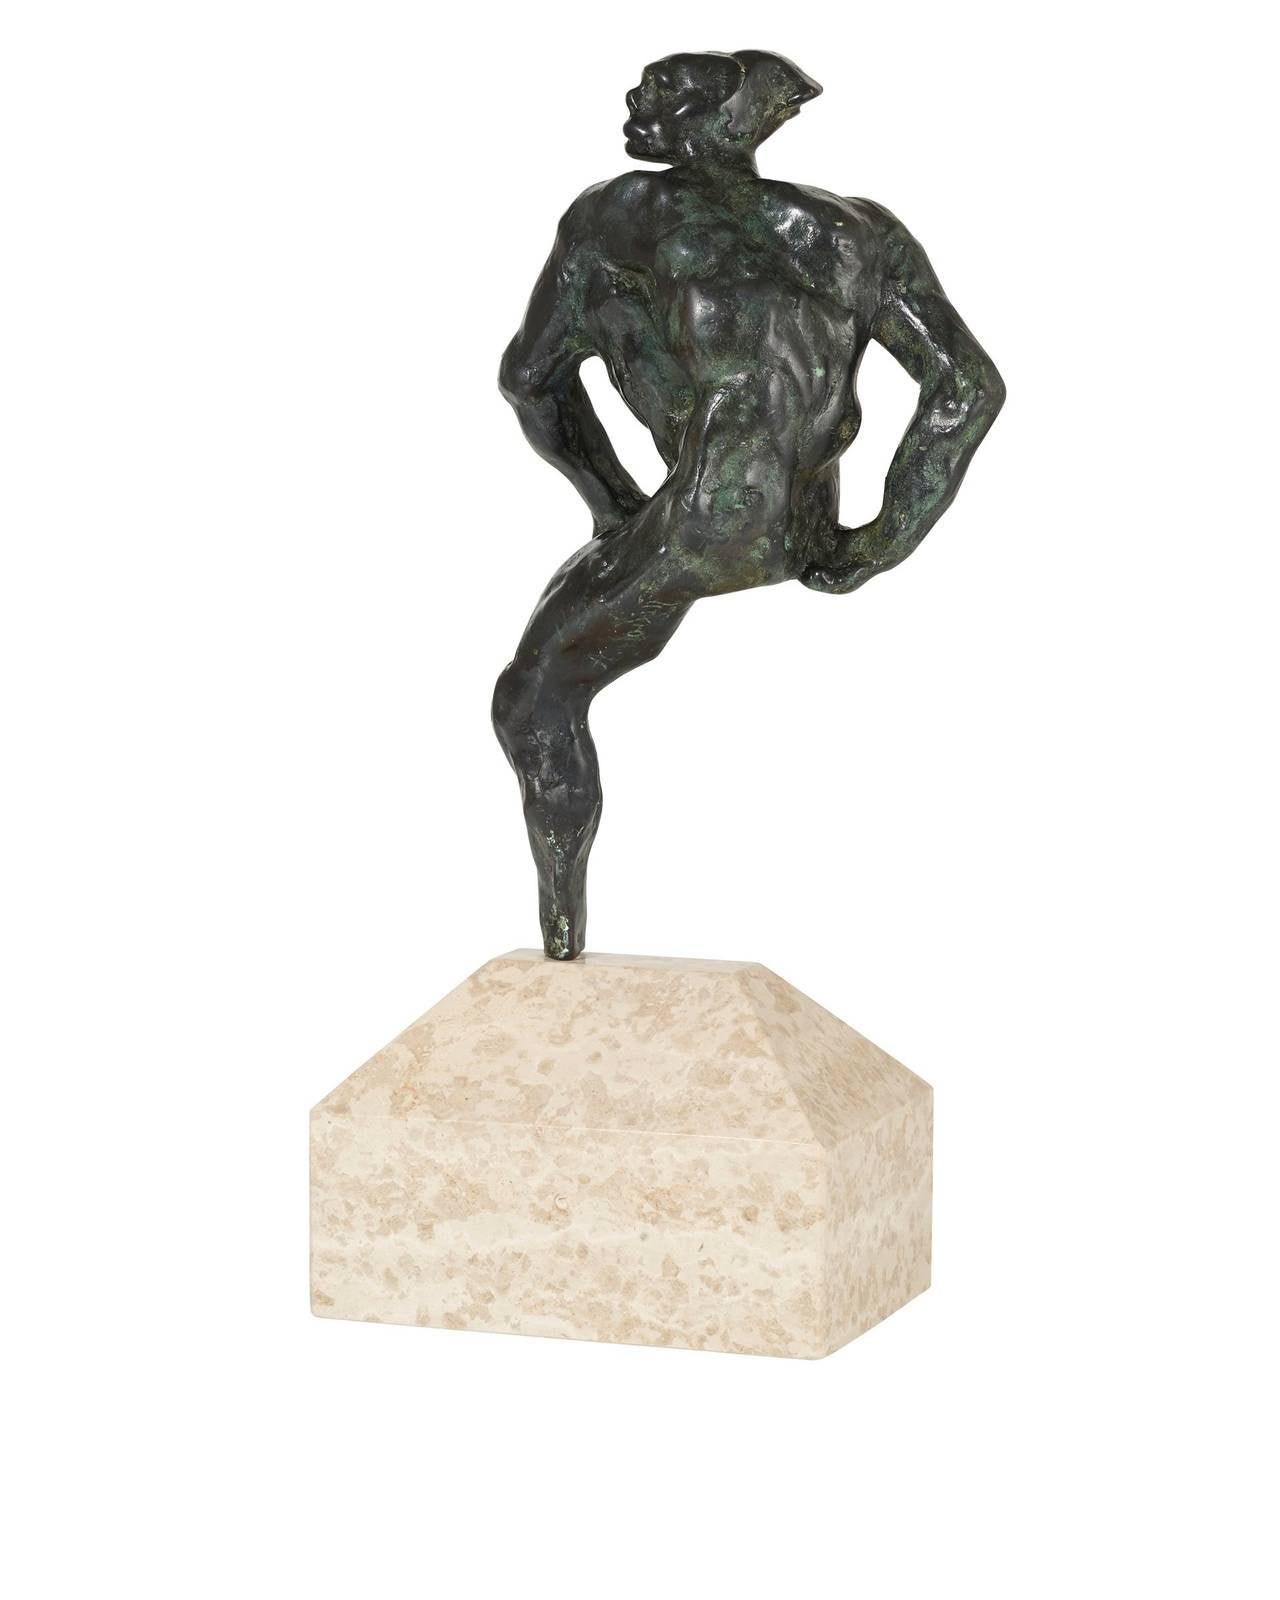 Nijinsky - Sculpture by Auguste Rodin